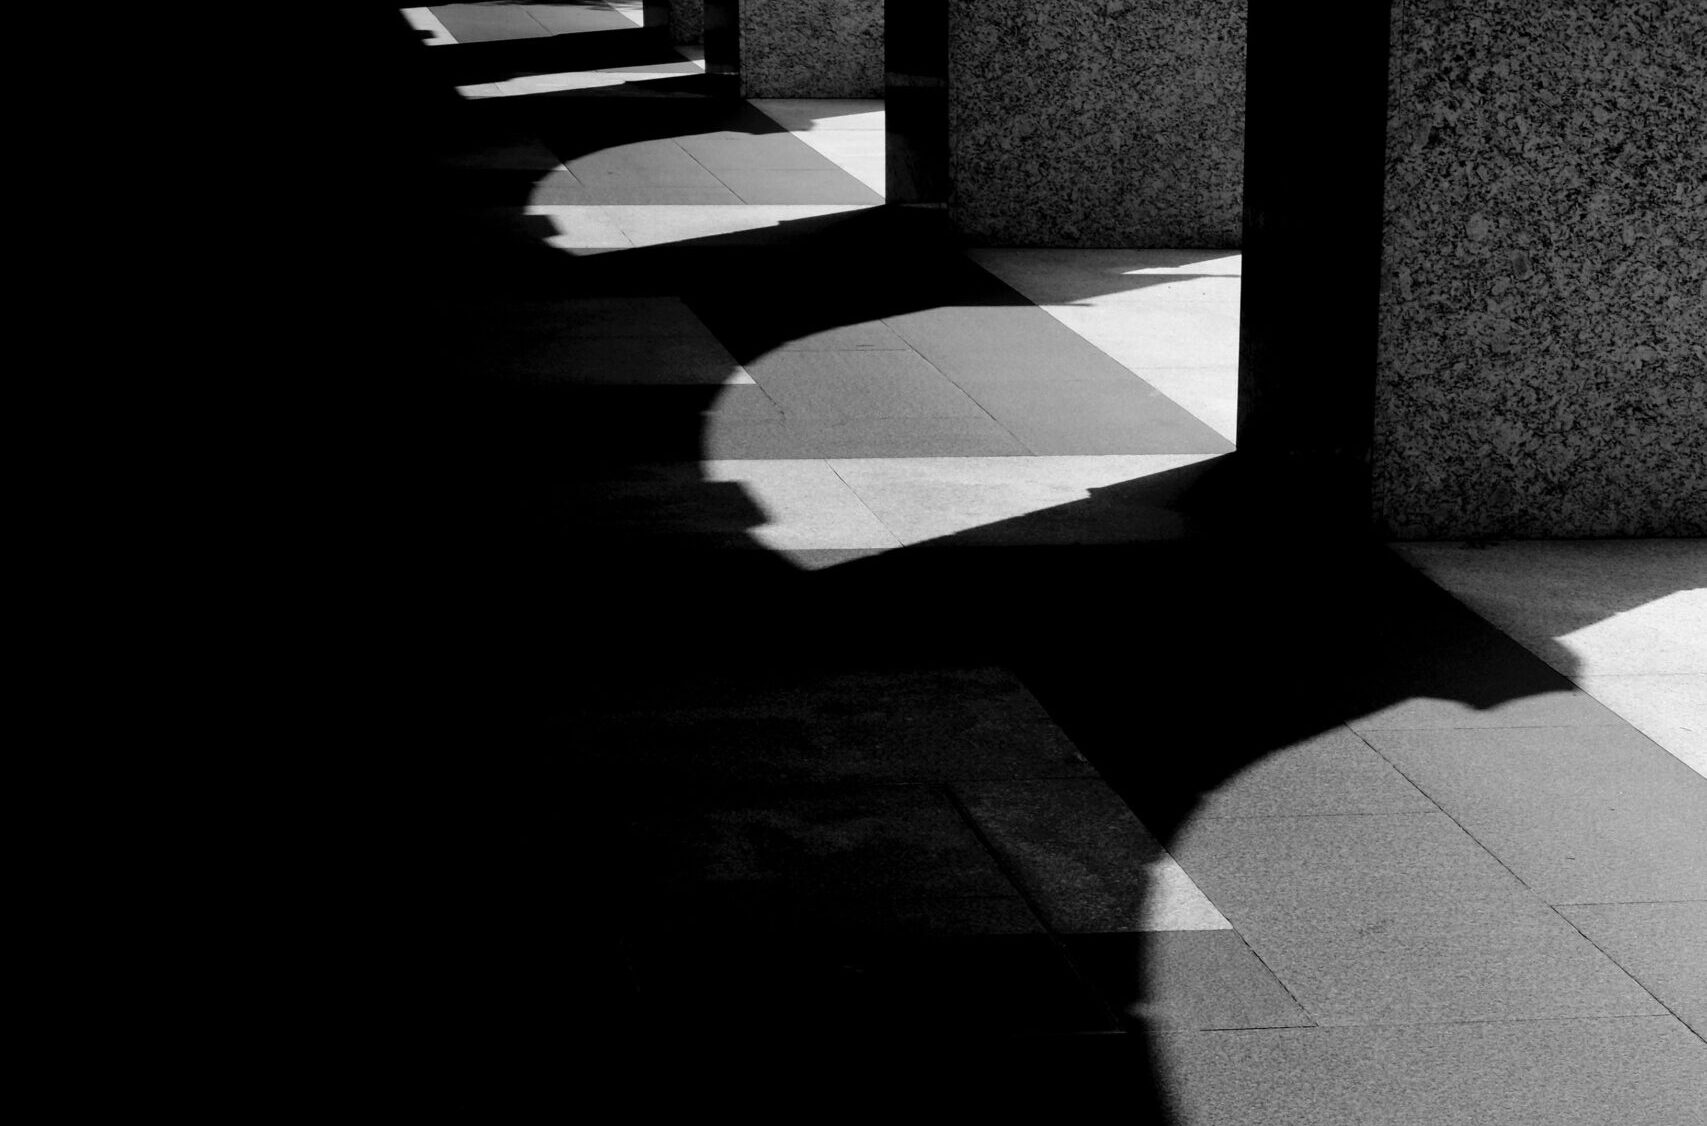 Säulen werfen Schatten auf einen Gang.